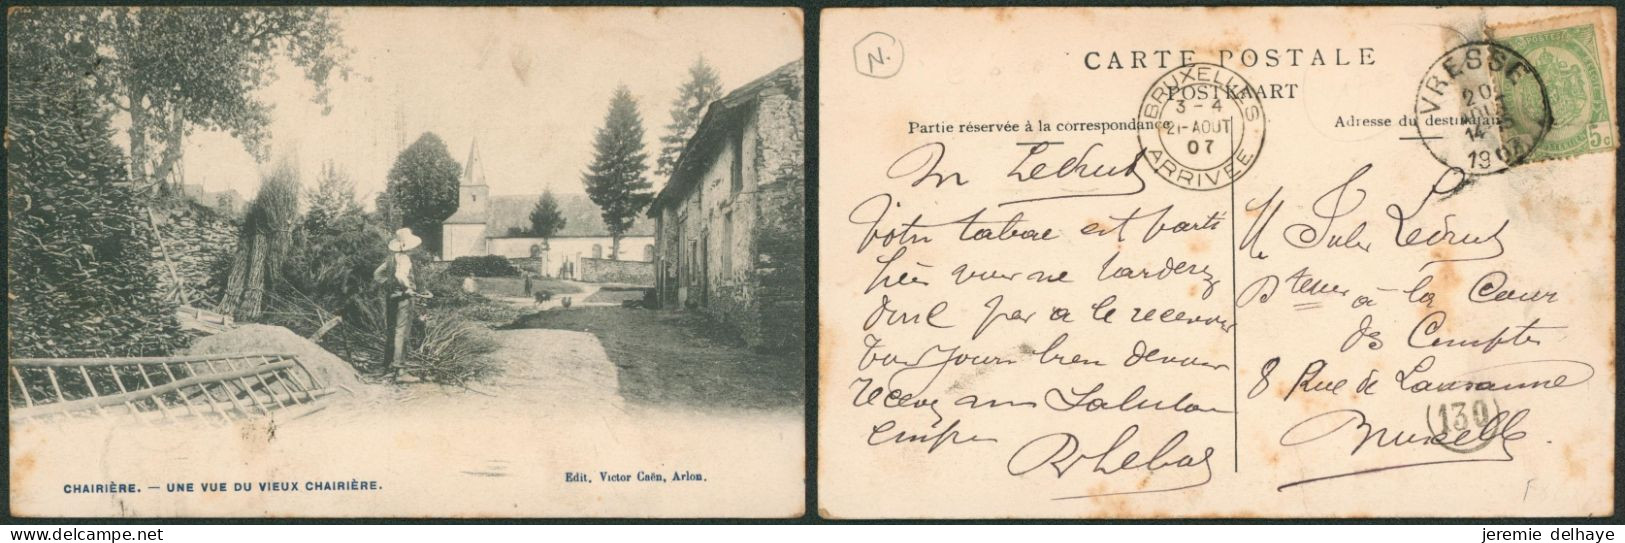 Carte Postale - Chairière : Une Vue Du Vieux Chairière (Edit. Victor Caën) - Vresse-sur-Semois